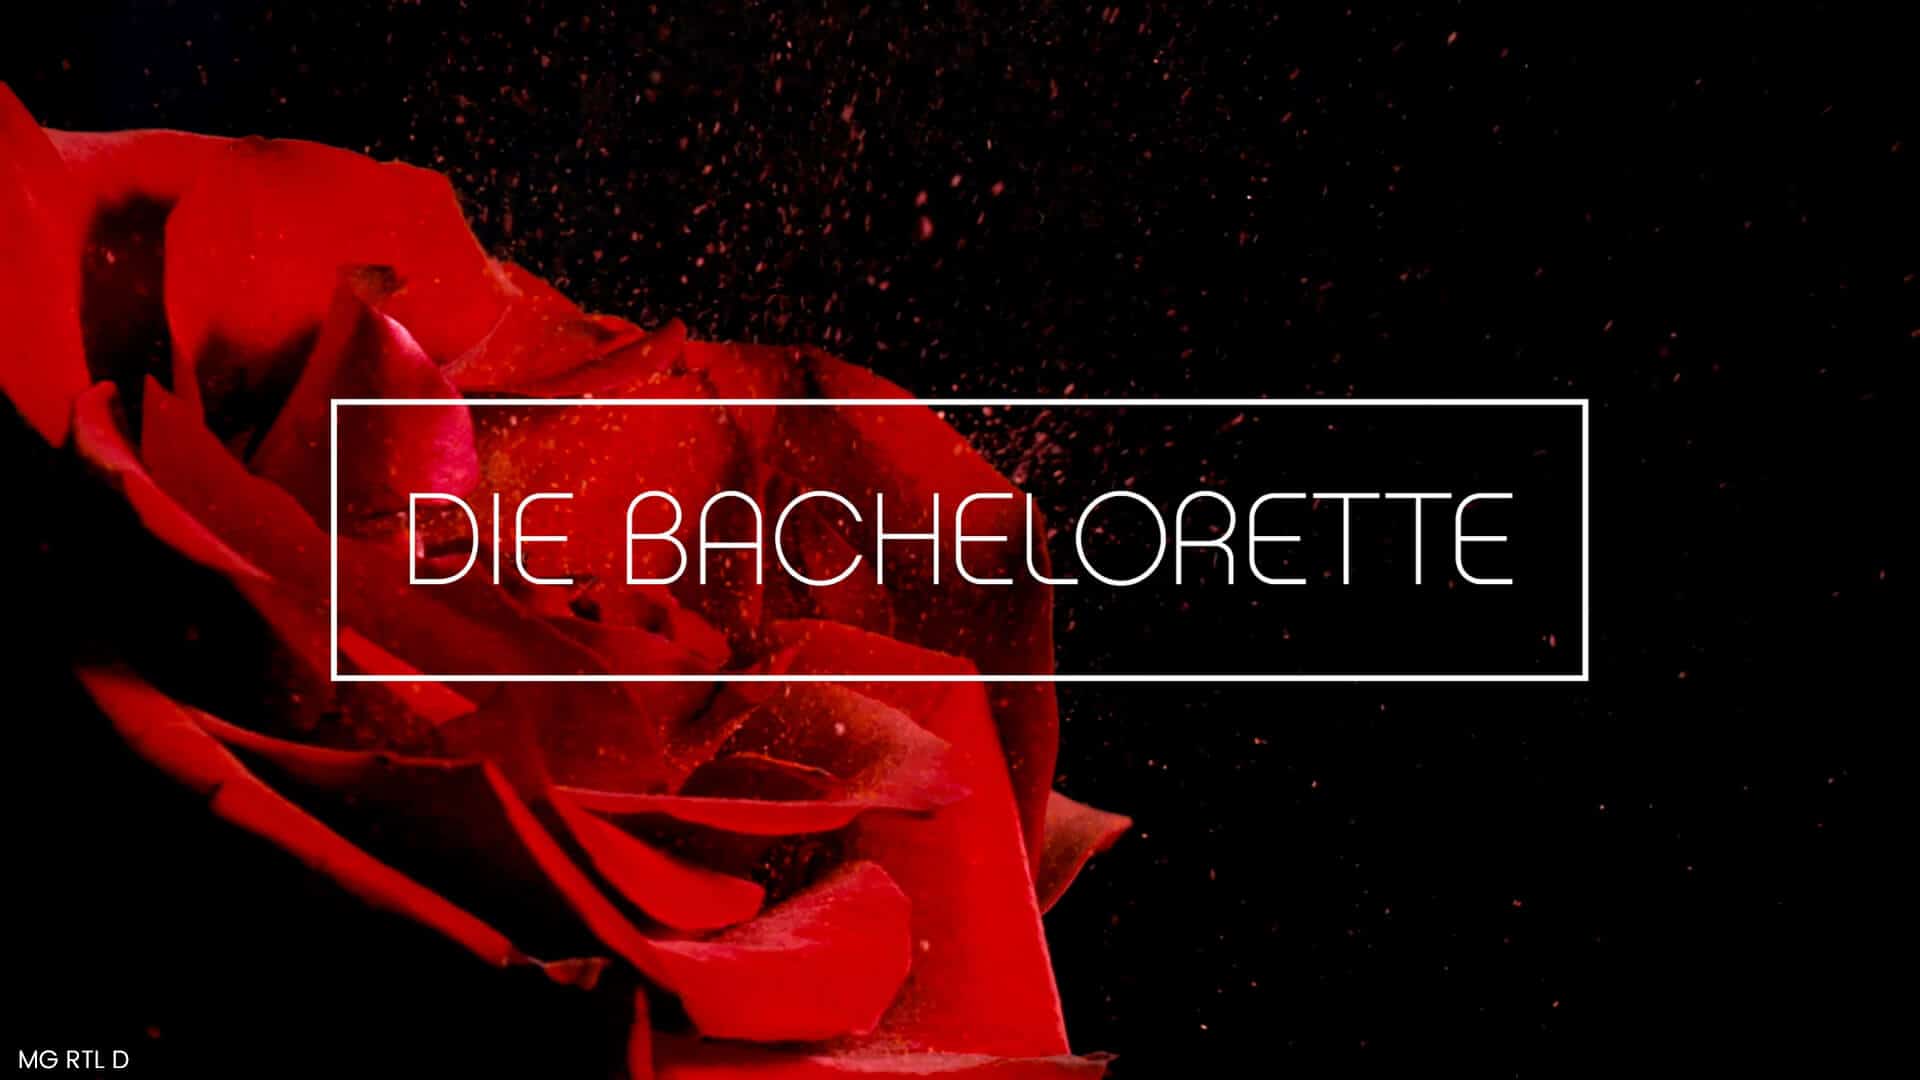 Eine rote Rose im Hintergrund mit dem Logo von Der Bachelorette